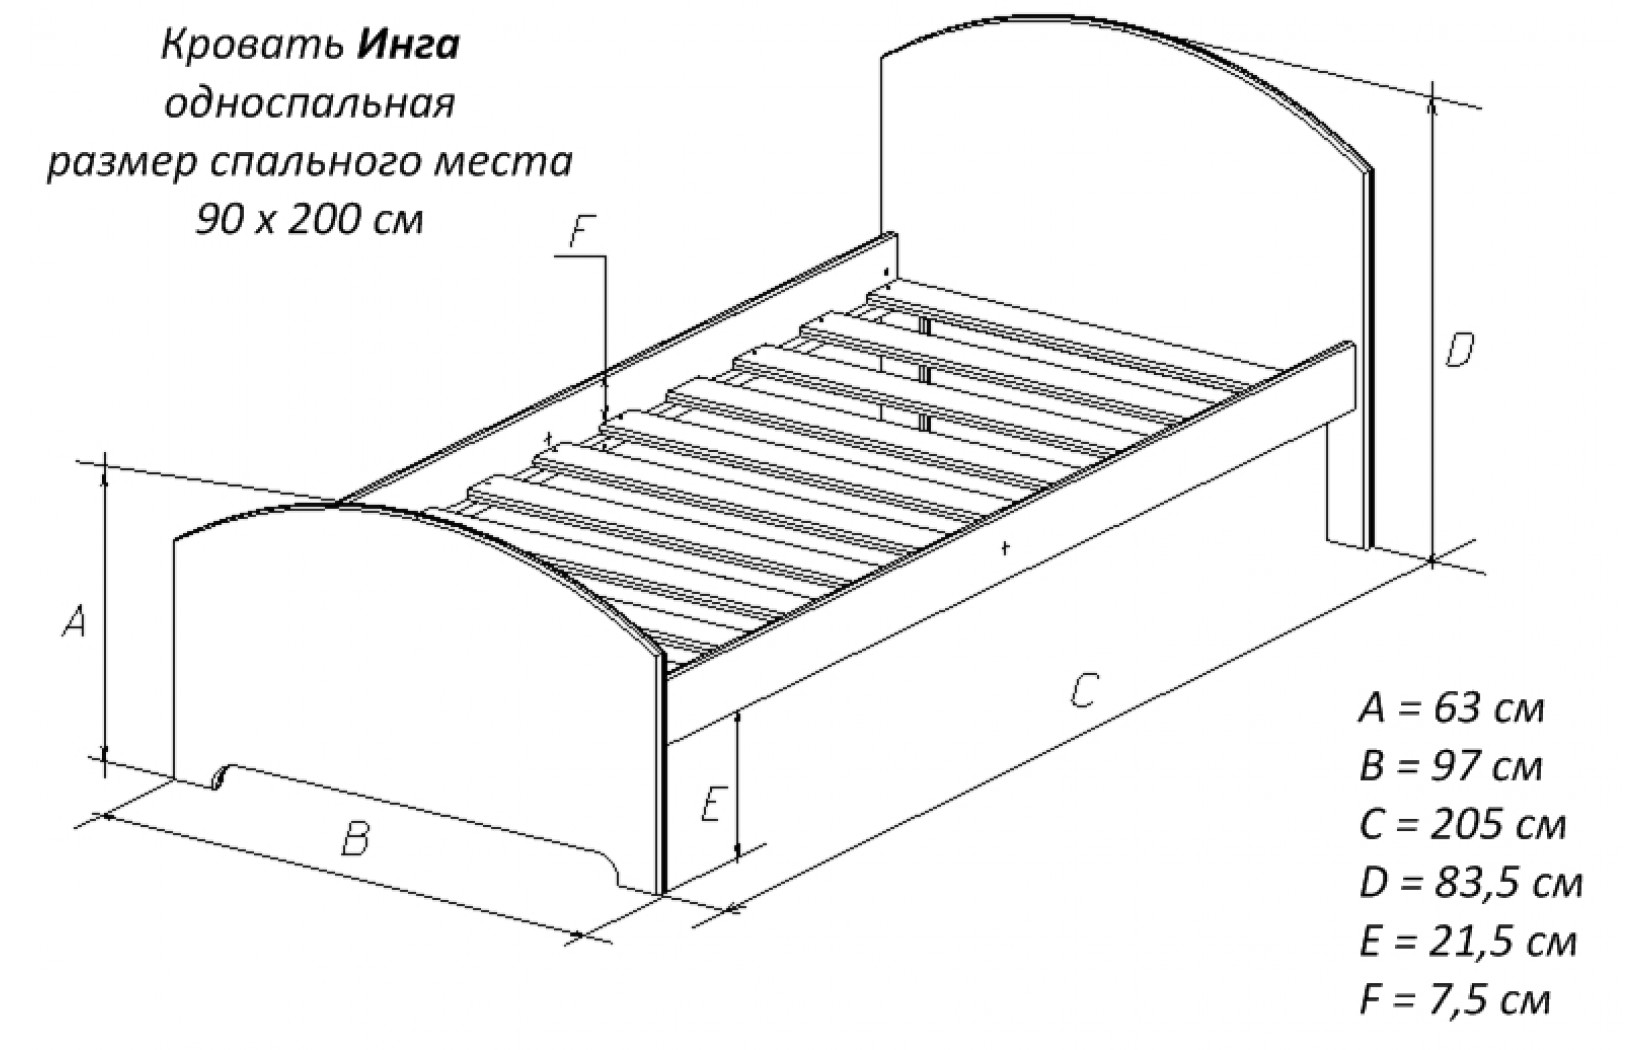 Кровать стандартная односпальная габариты чертежи